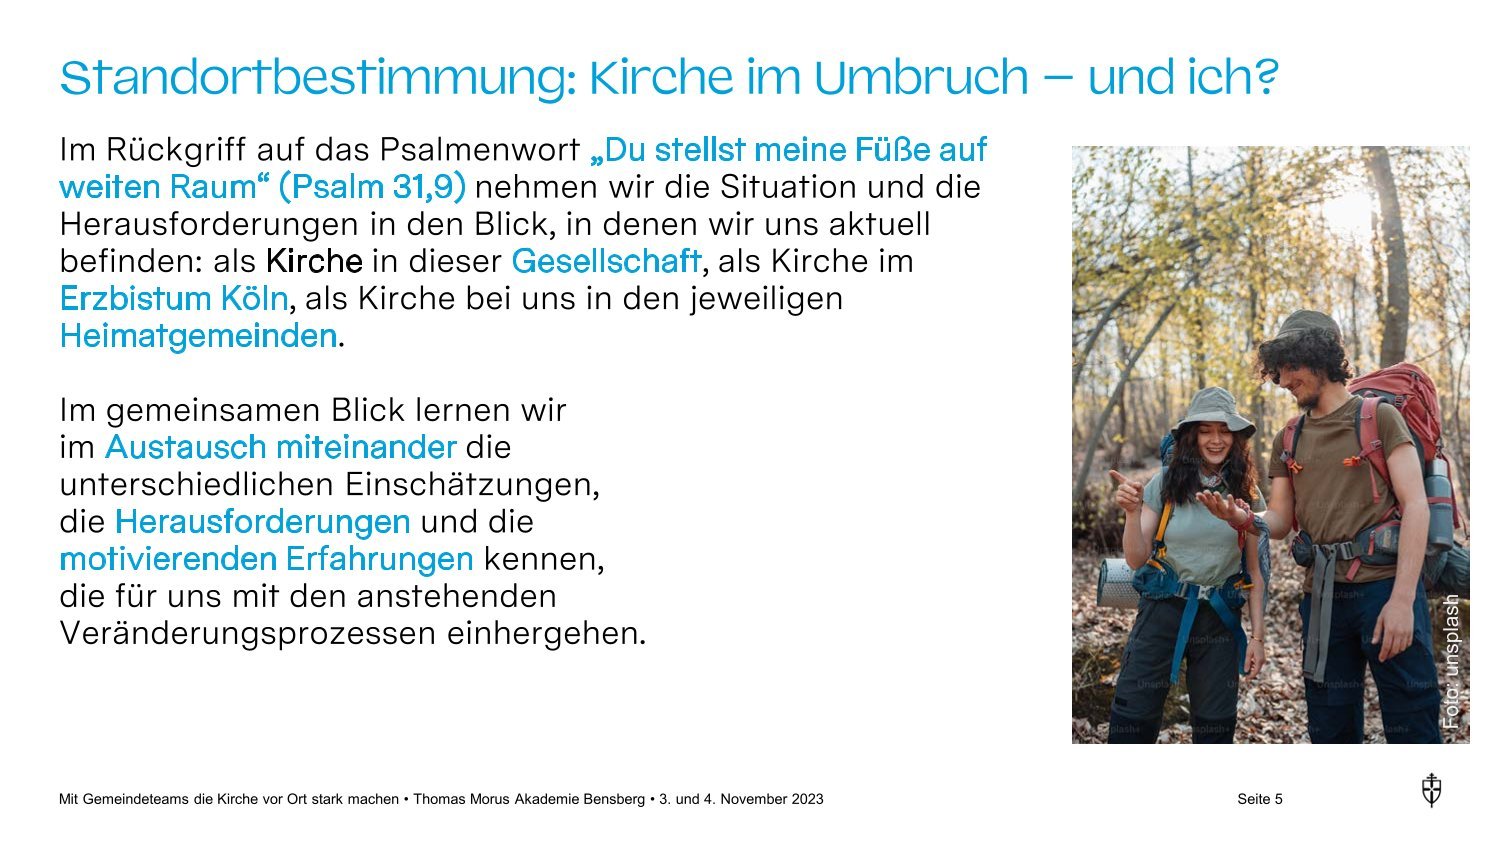 Gemeindeteam-WE_TMA Bensberg_3. 4. November 2023 - Kurzfassung (c) Erzbistum Köln